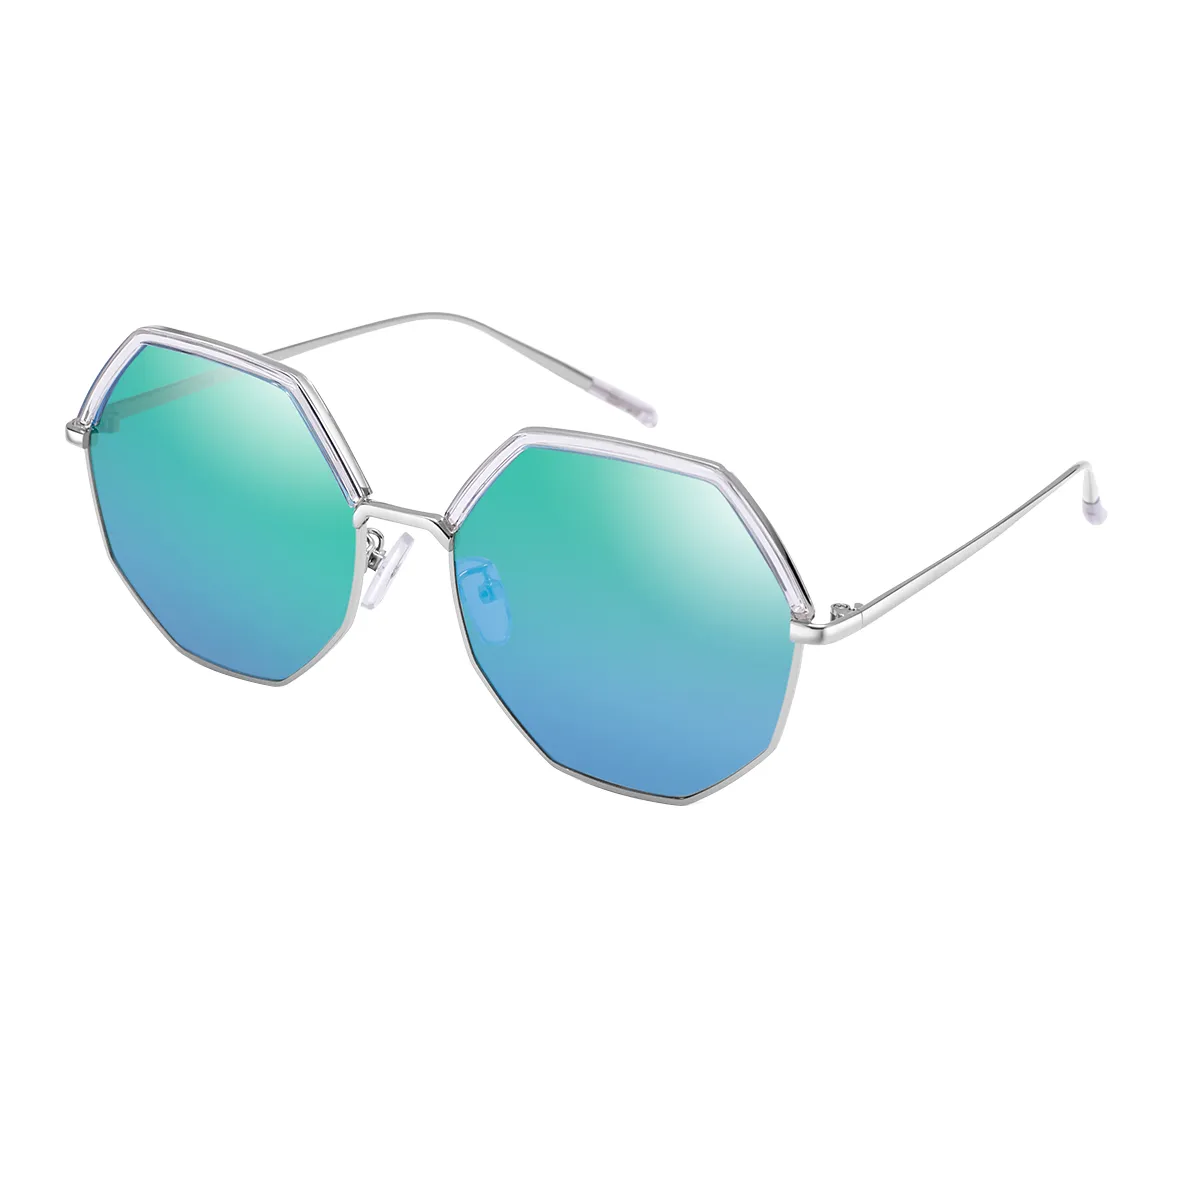 Di - Geometric Silver/Blue Sunglasses for Women